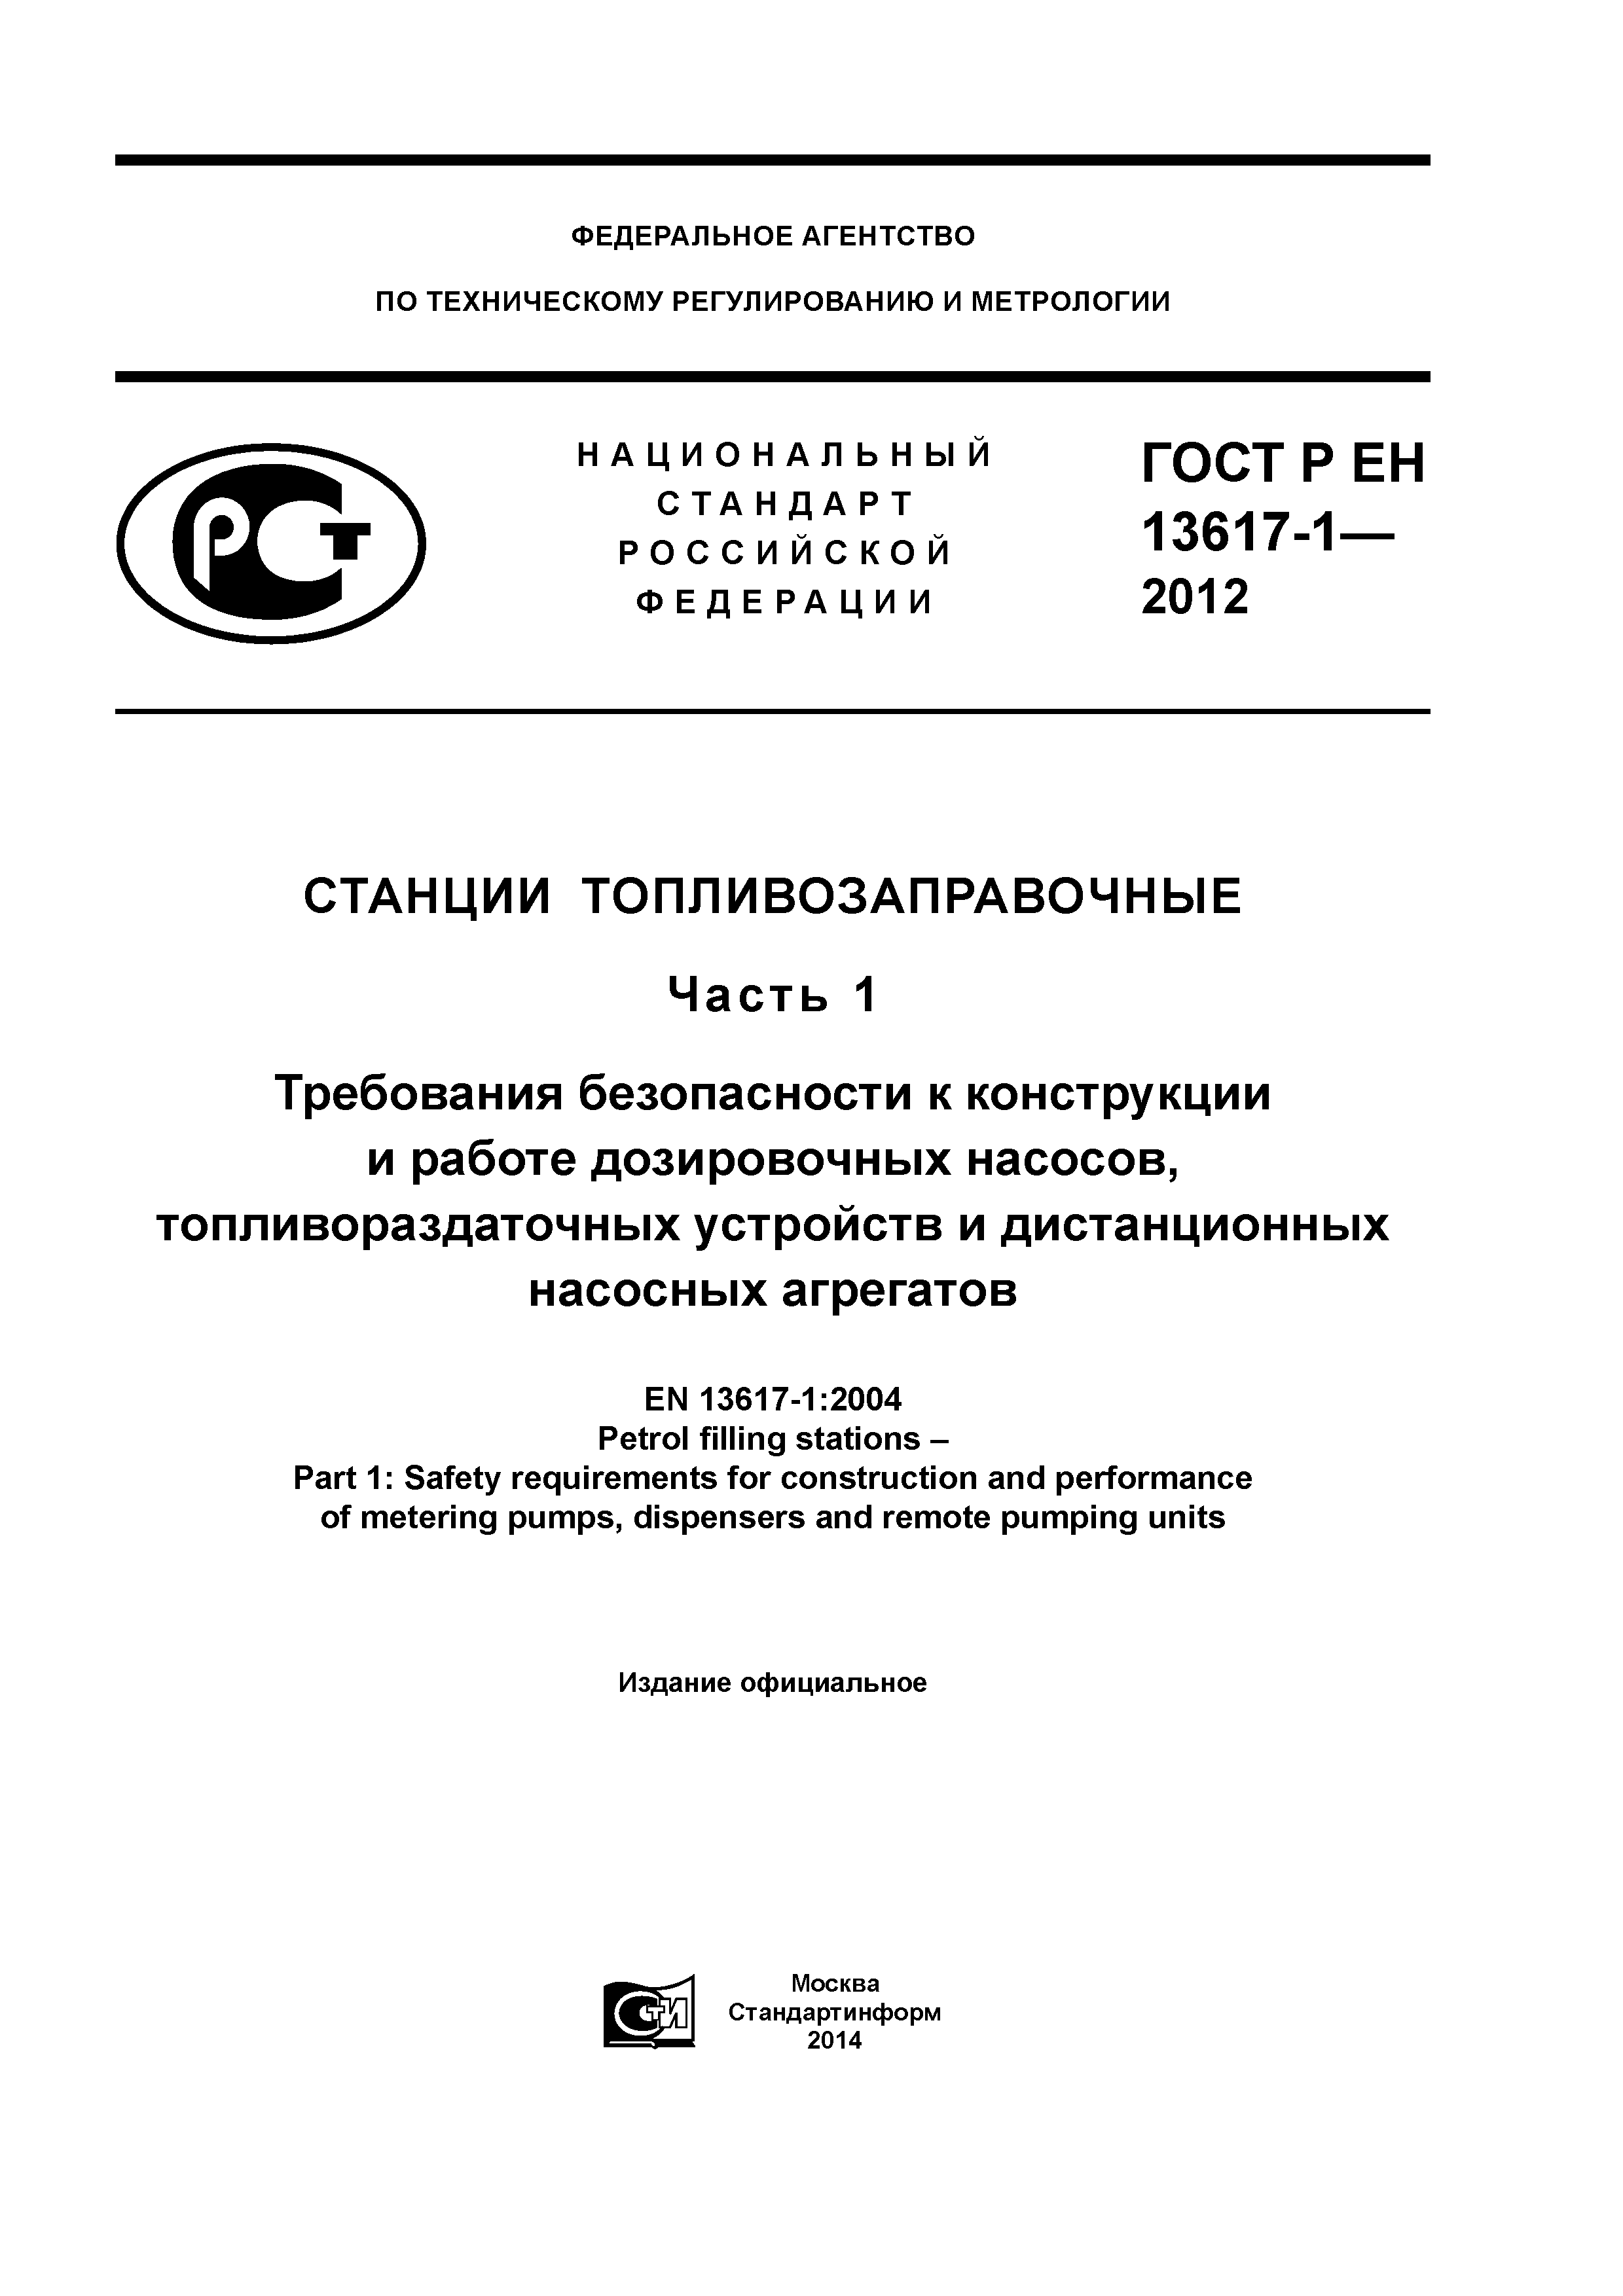 ГОСТ Р ЕН 13617-1-2012